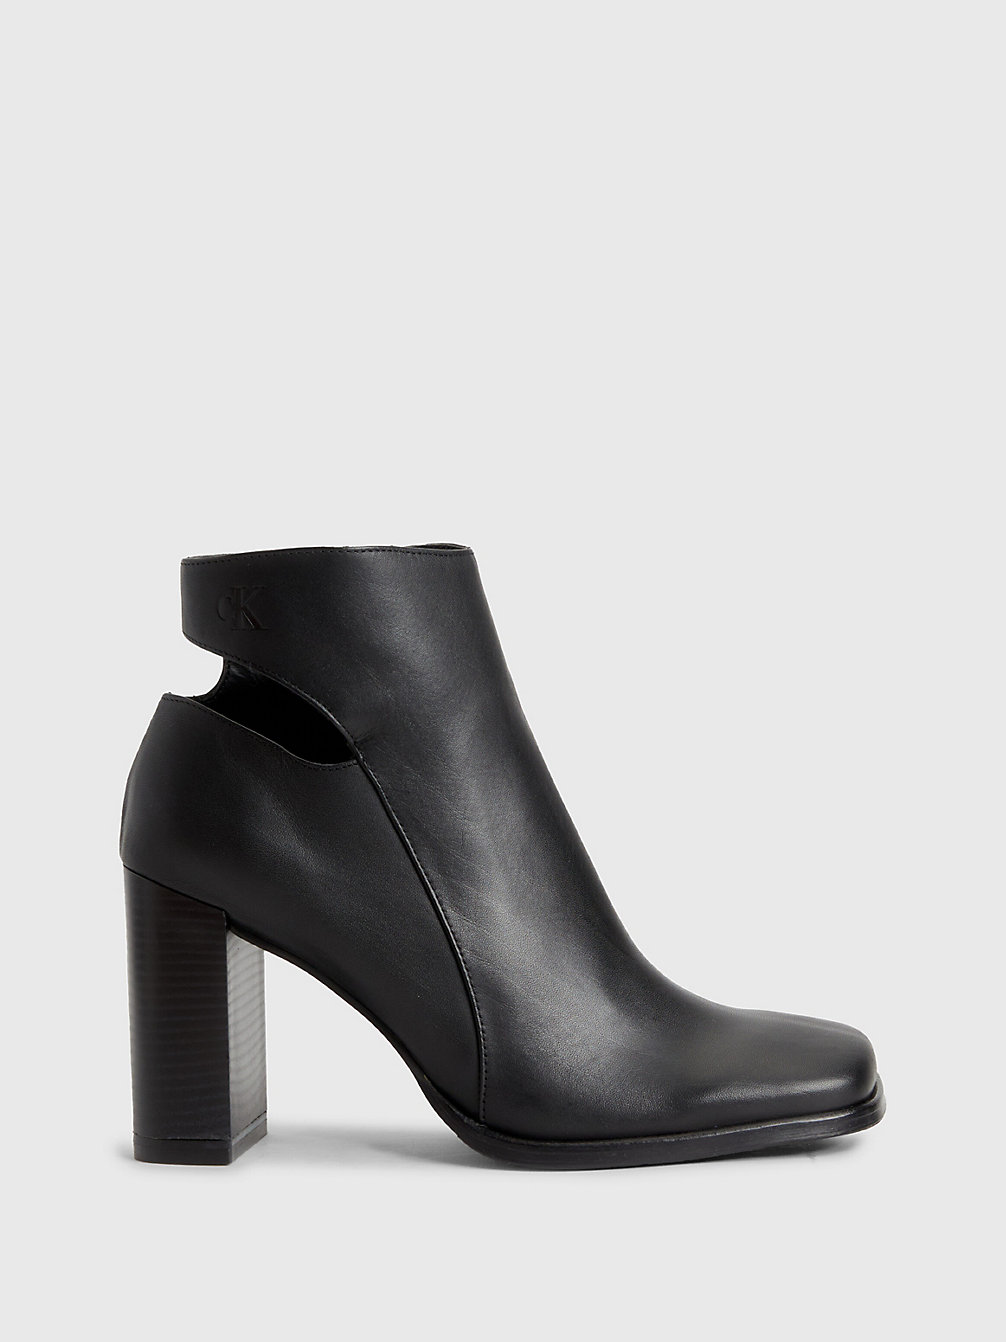 TRIPLE BLACK > Ankle-Boots Mit Absatz Aus Leder > undefined Damen - Calvin Klein